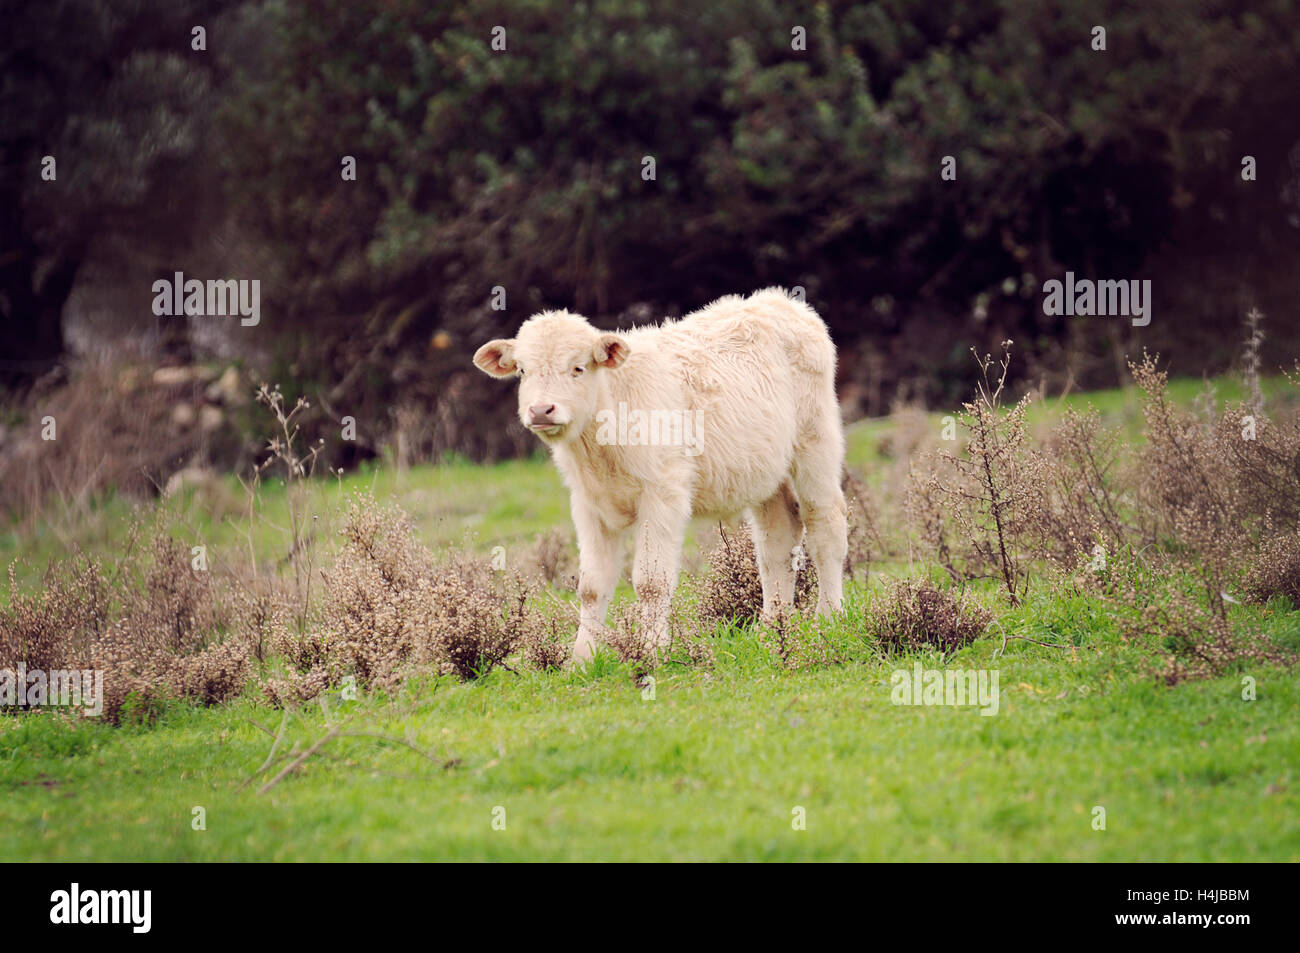 Full Length Of Bull Walking In Grassy Field Stock Photo